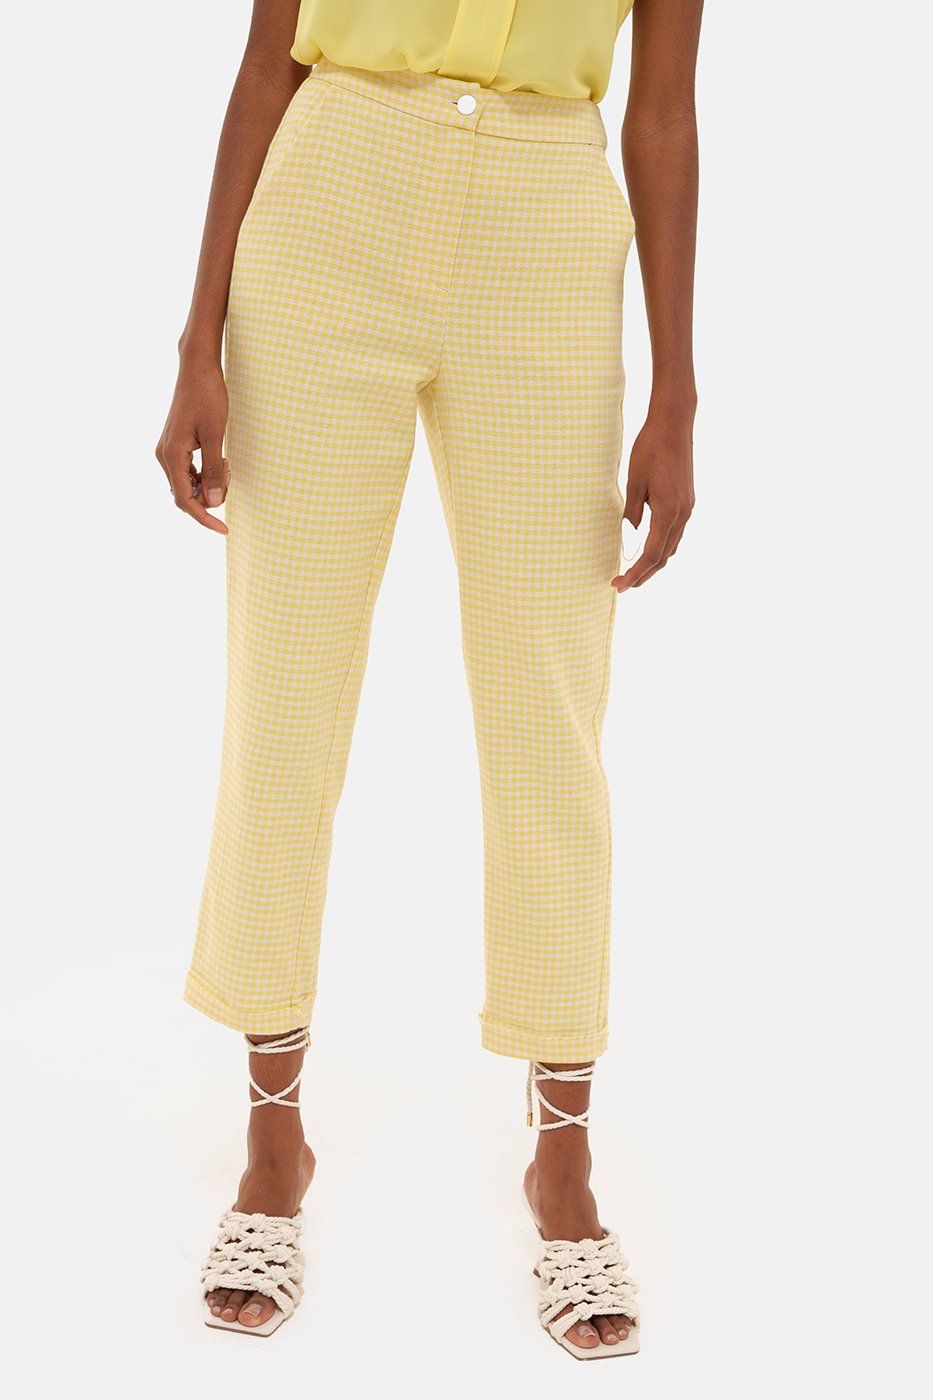 Pantalone giallo Susanna Face to Face Style